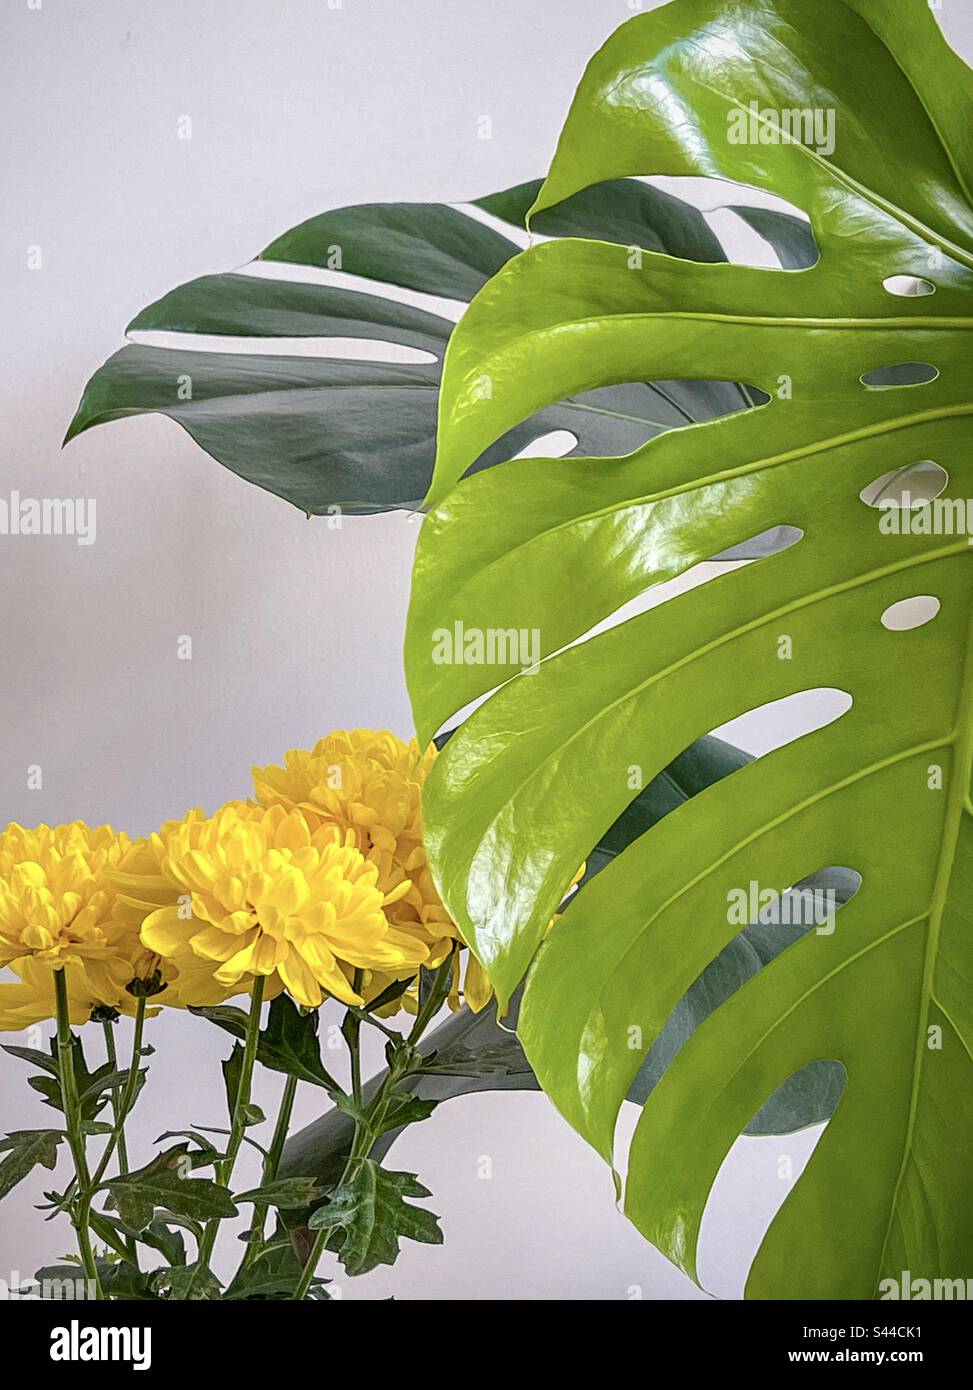 Gros plan de la plante à fleurs de chrysanthème jaune à côté de la grande feuille de monstère déliciosa, nouvellement non furée, vert clair. Nuances de vert et de jaune. Banque D'Images